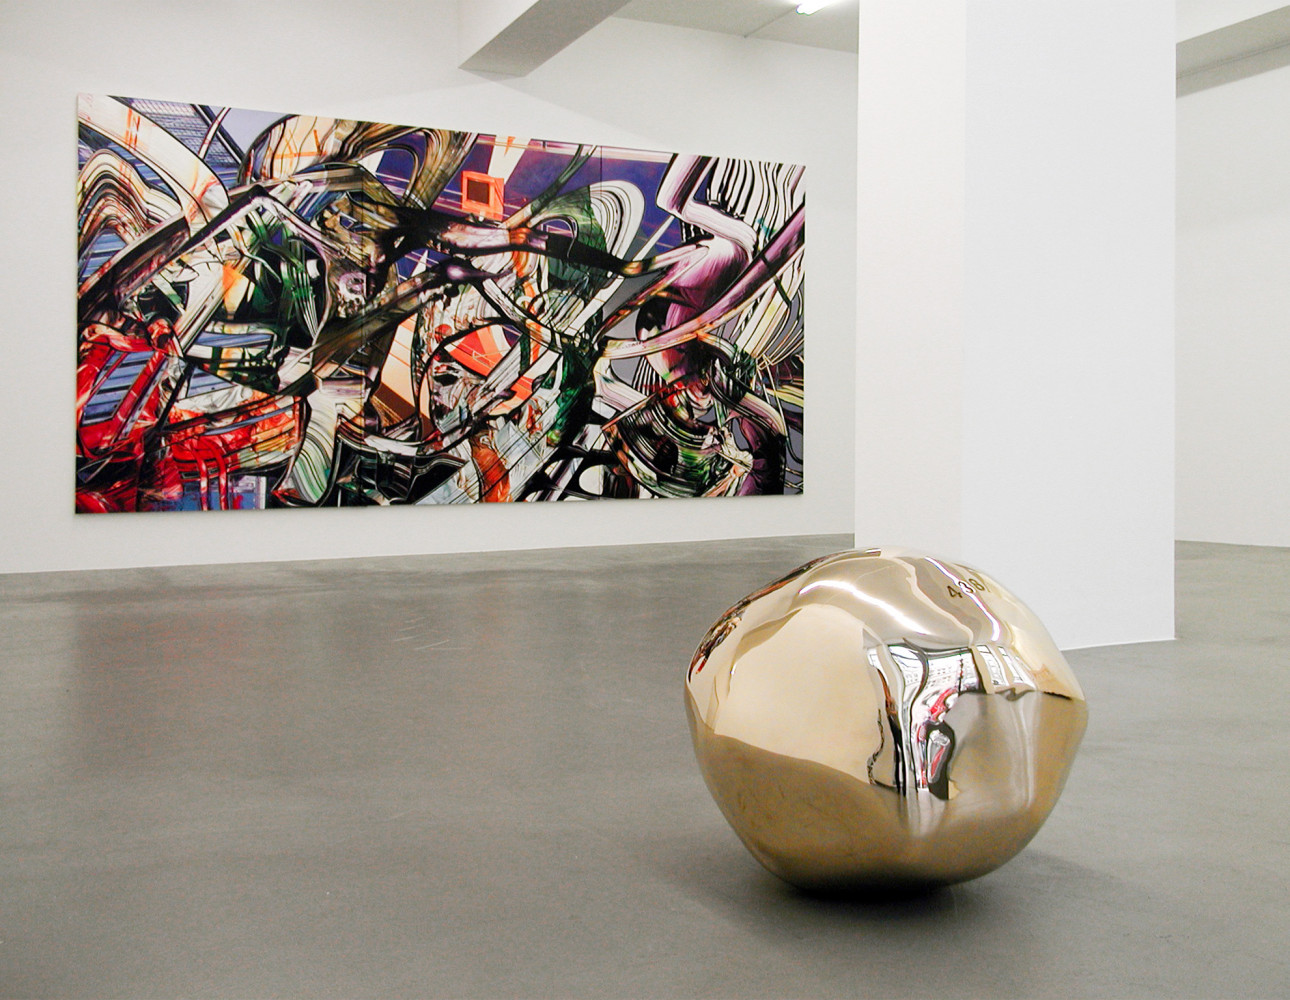 Sean Dawson, Wilhelm Mundt, Installationsansicht, Buchmann Galerie, 2009